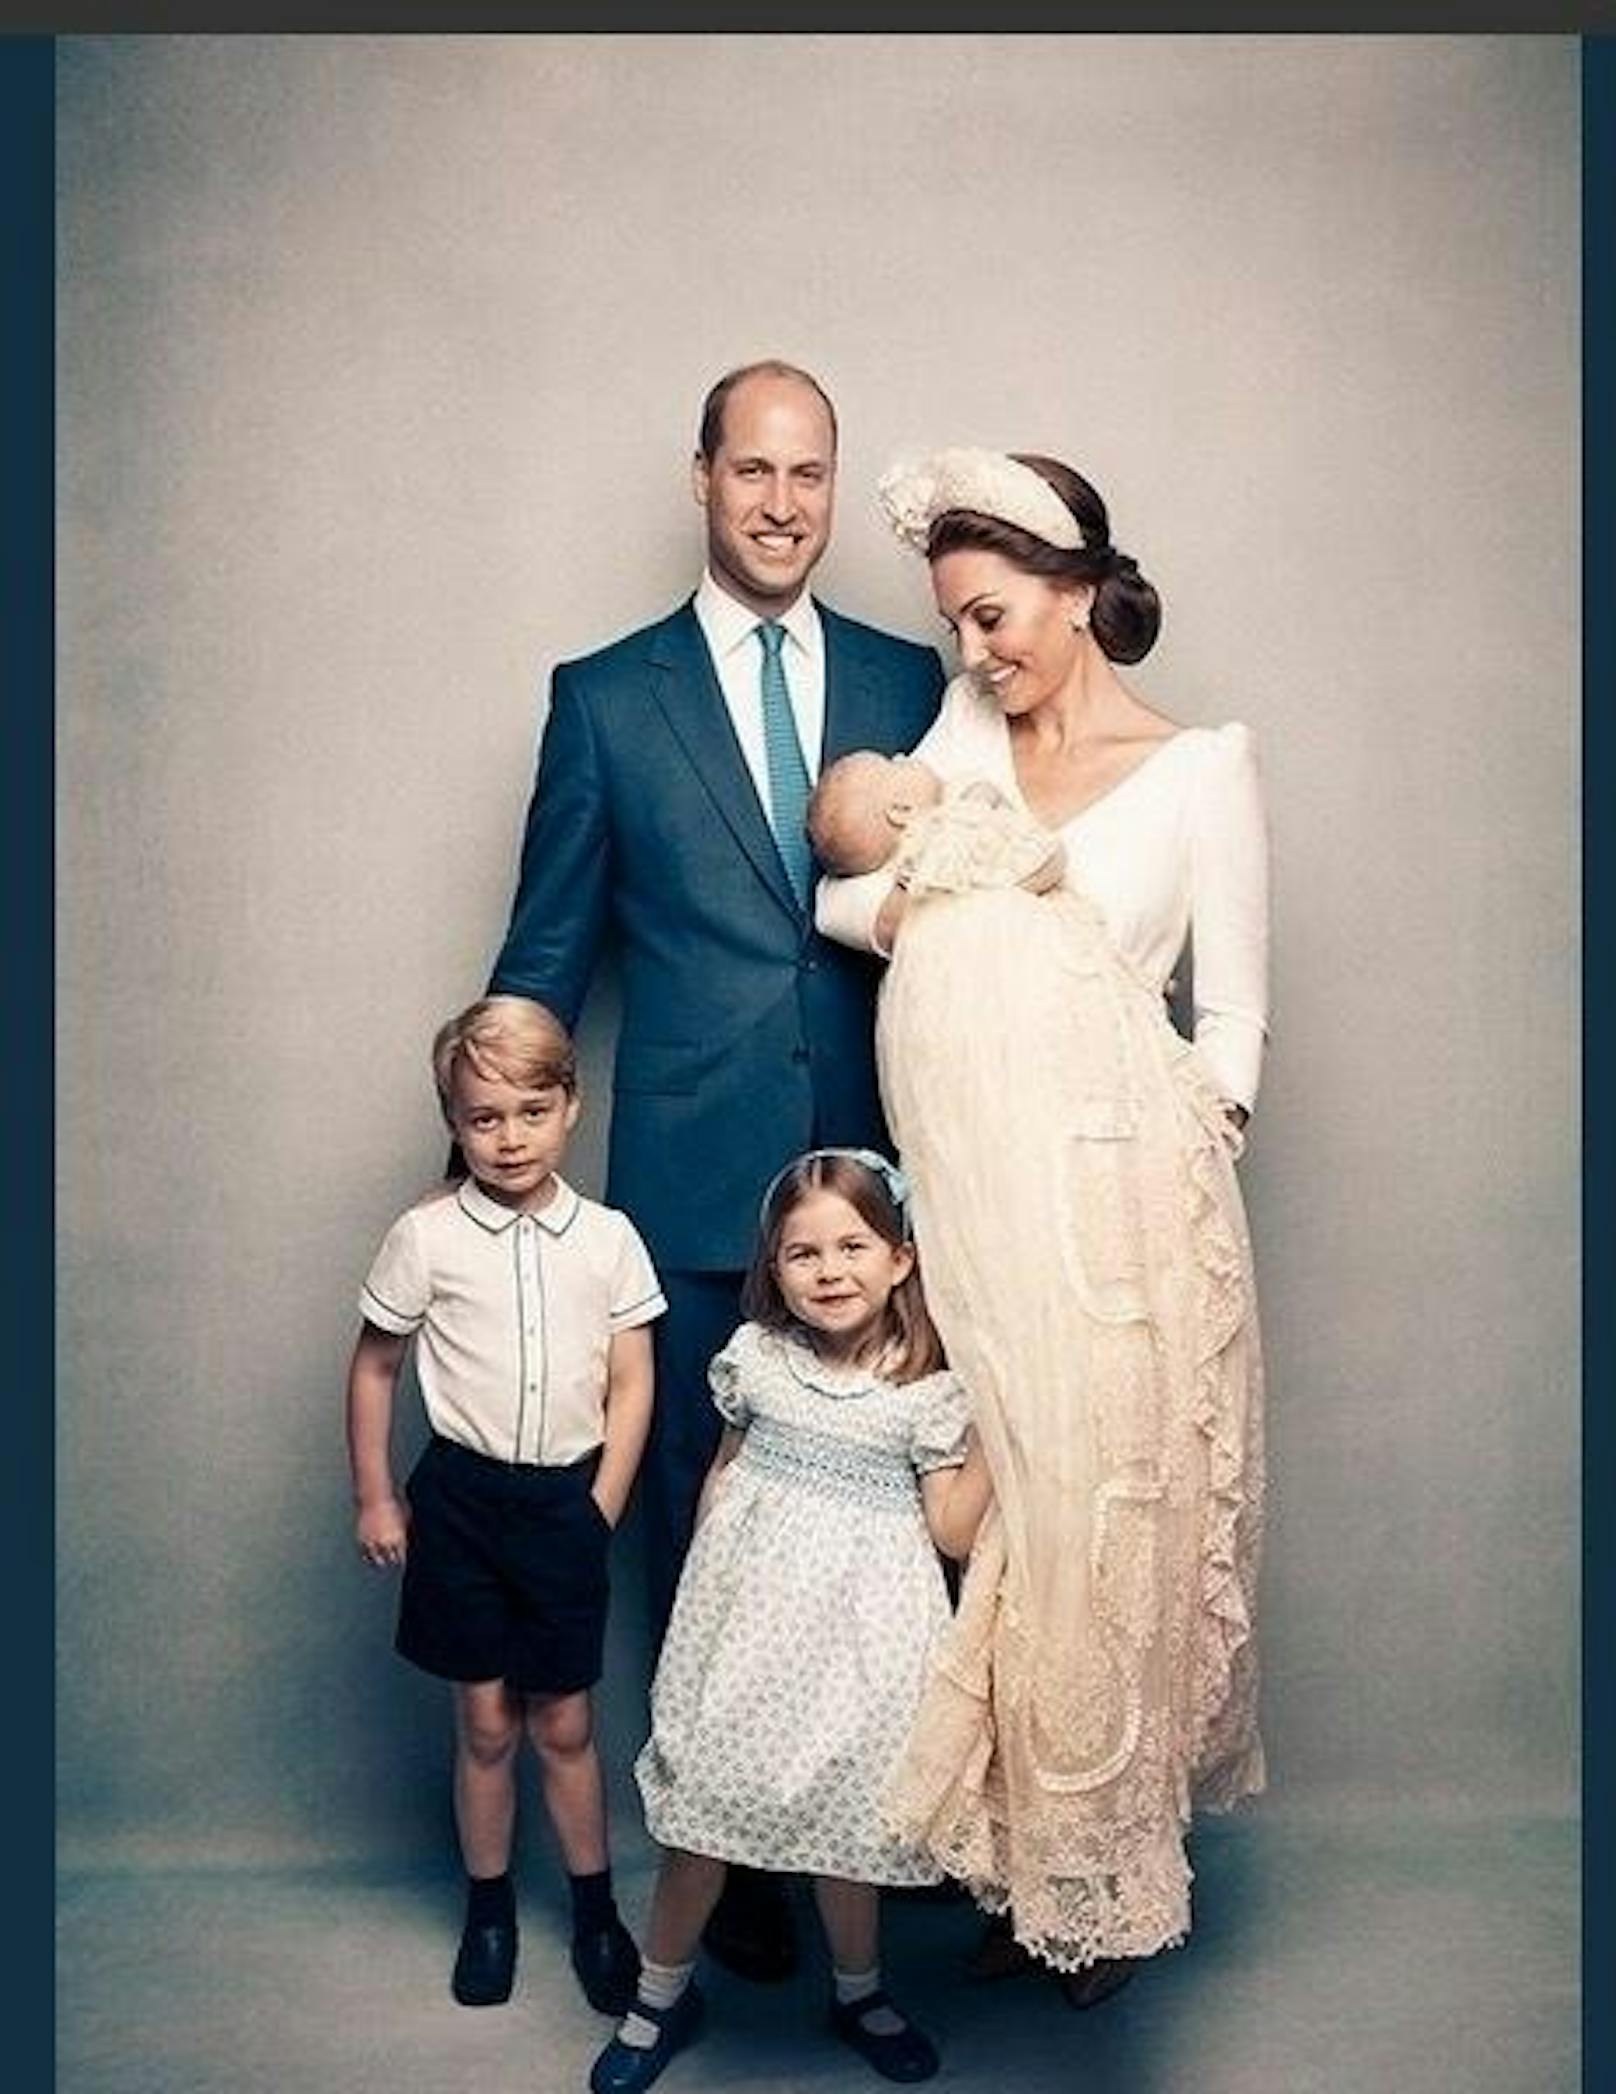 ... Catherine ihren Sohn verzückt anschaut. Ein weiteres Foto zeigt die frisch gebackene fünffache Familie: Mama Kate, Papa William und die drei Kinder Prinz George (4), Prinzessin Charlotte (3) und Prinz Louis. Die beiden zusätzlichen Aufnahmen sind grössere ...